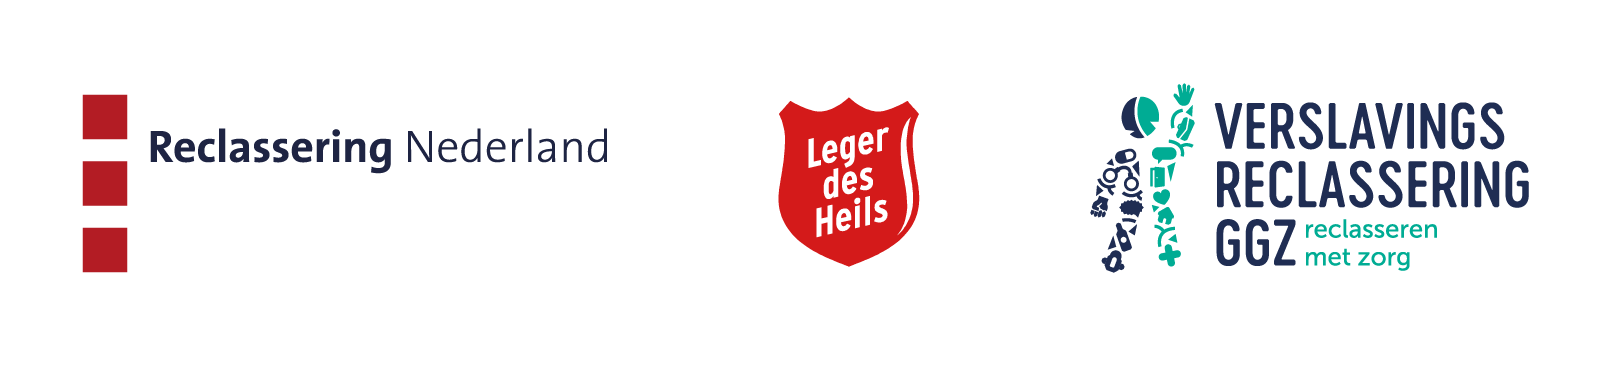 Logo's Reclassering Nederland, Leger des Heils en Verslavings Reclassering GGZ